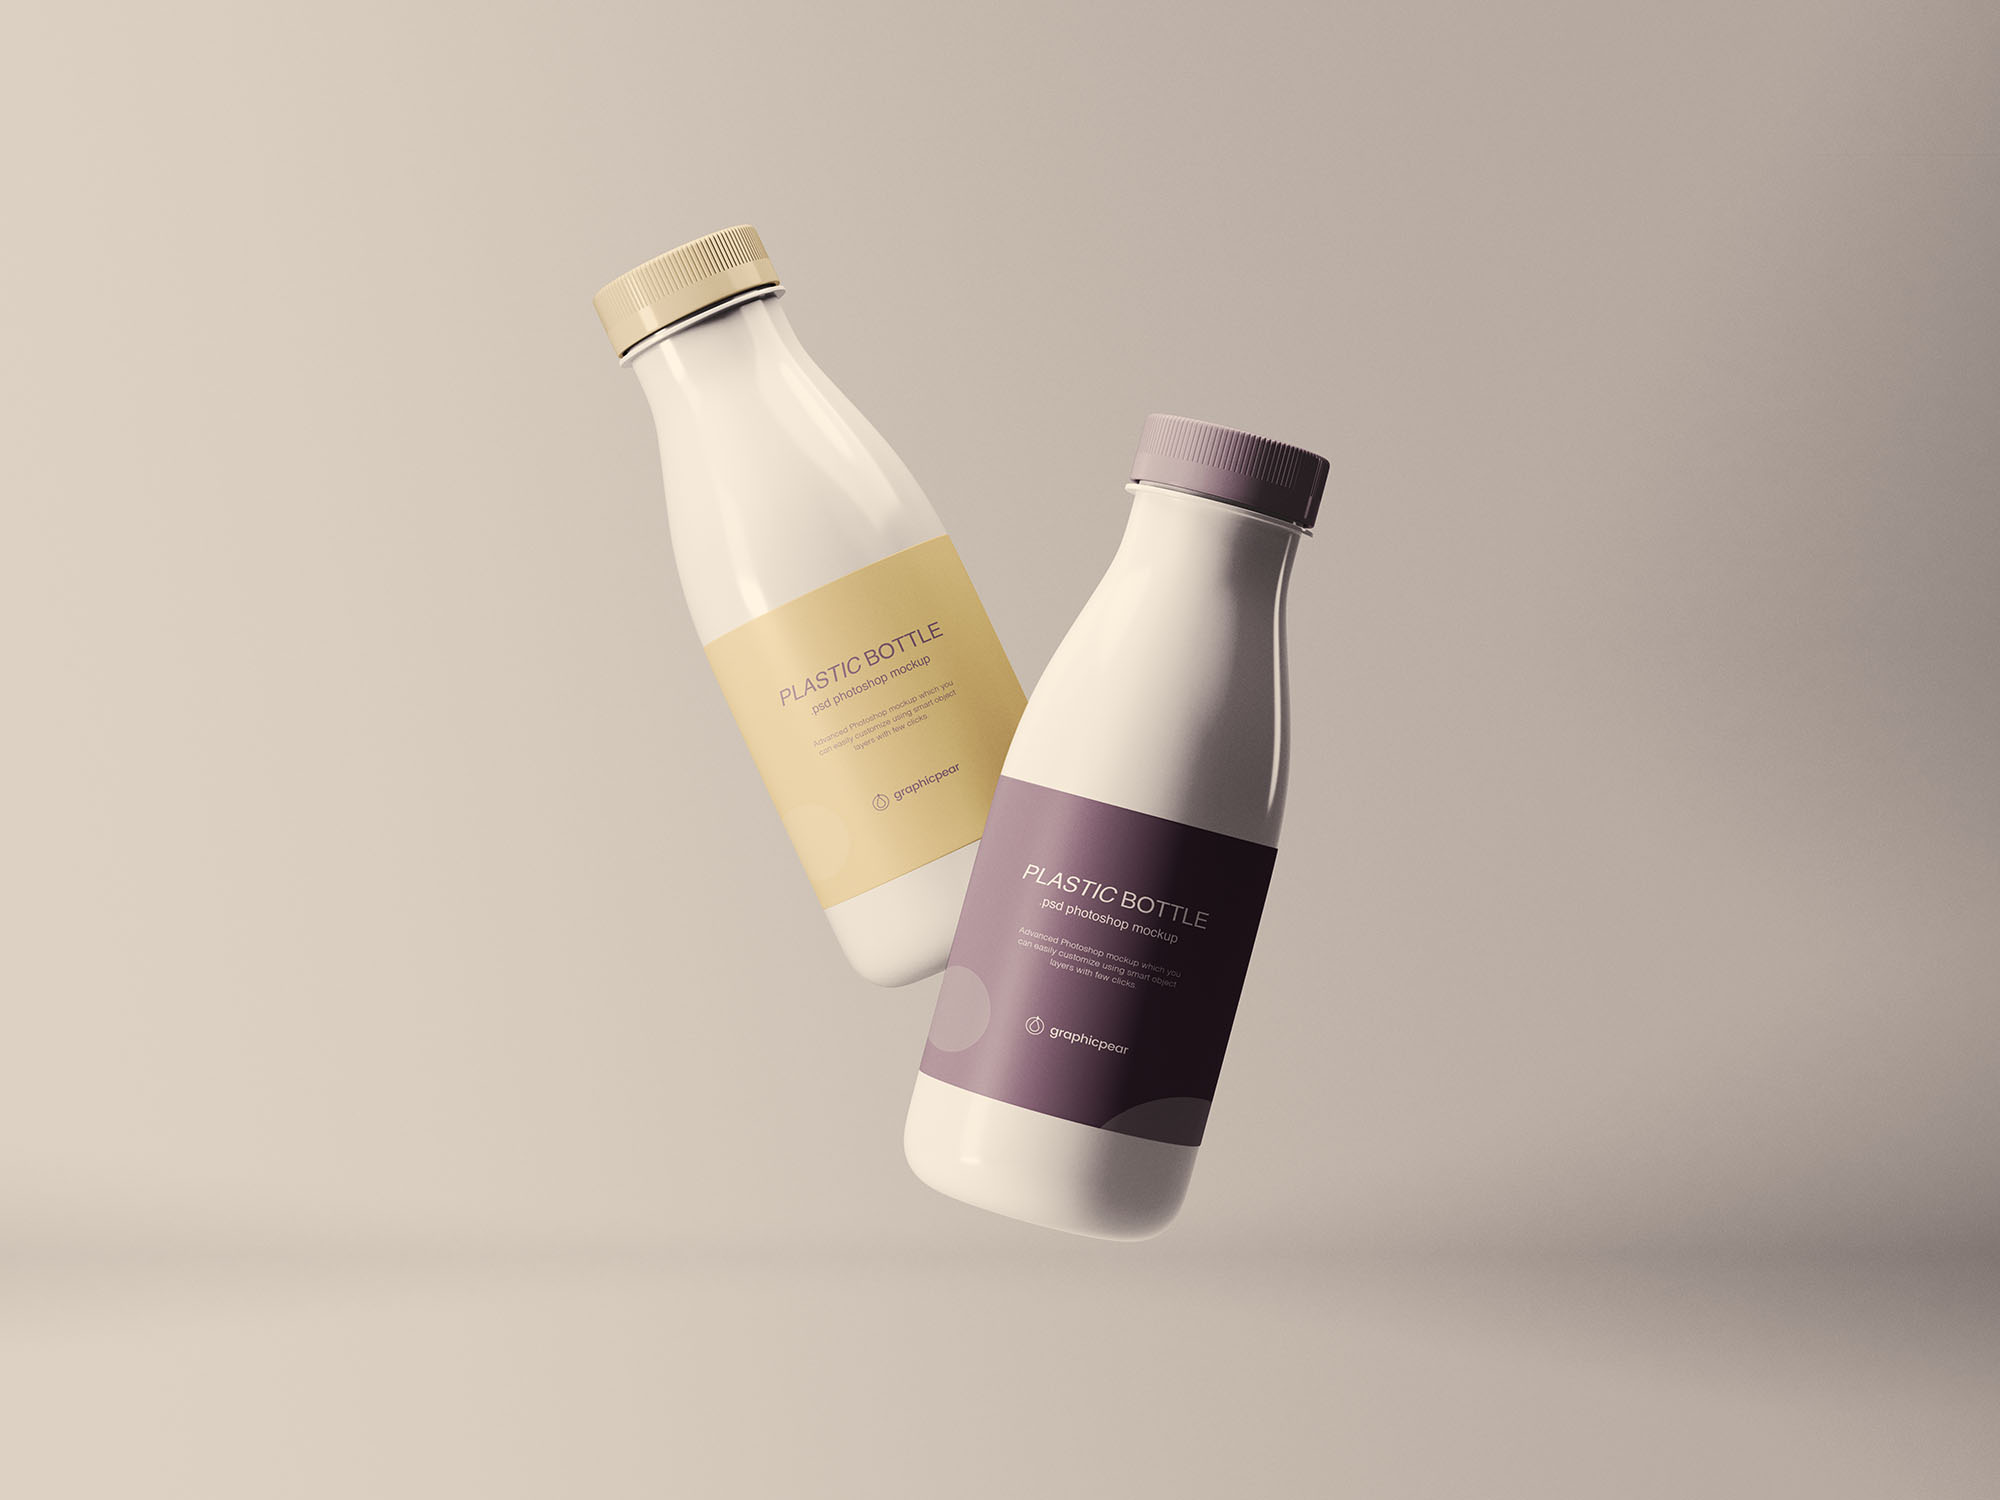 悬浮状态牛奶饮料塑料瓶设计预览样机 Floating Plastic Bottles Mockup插图